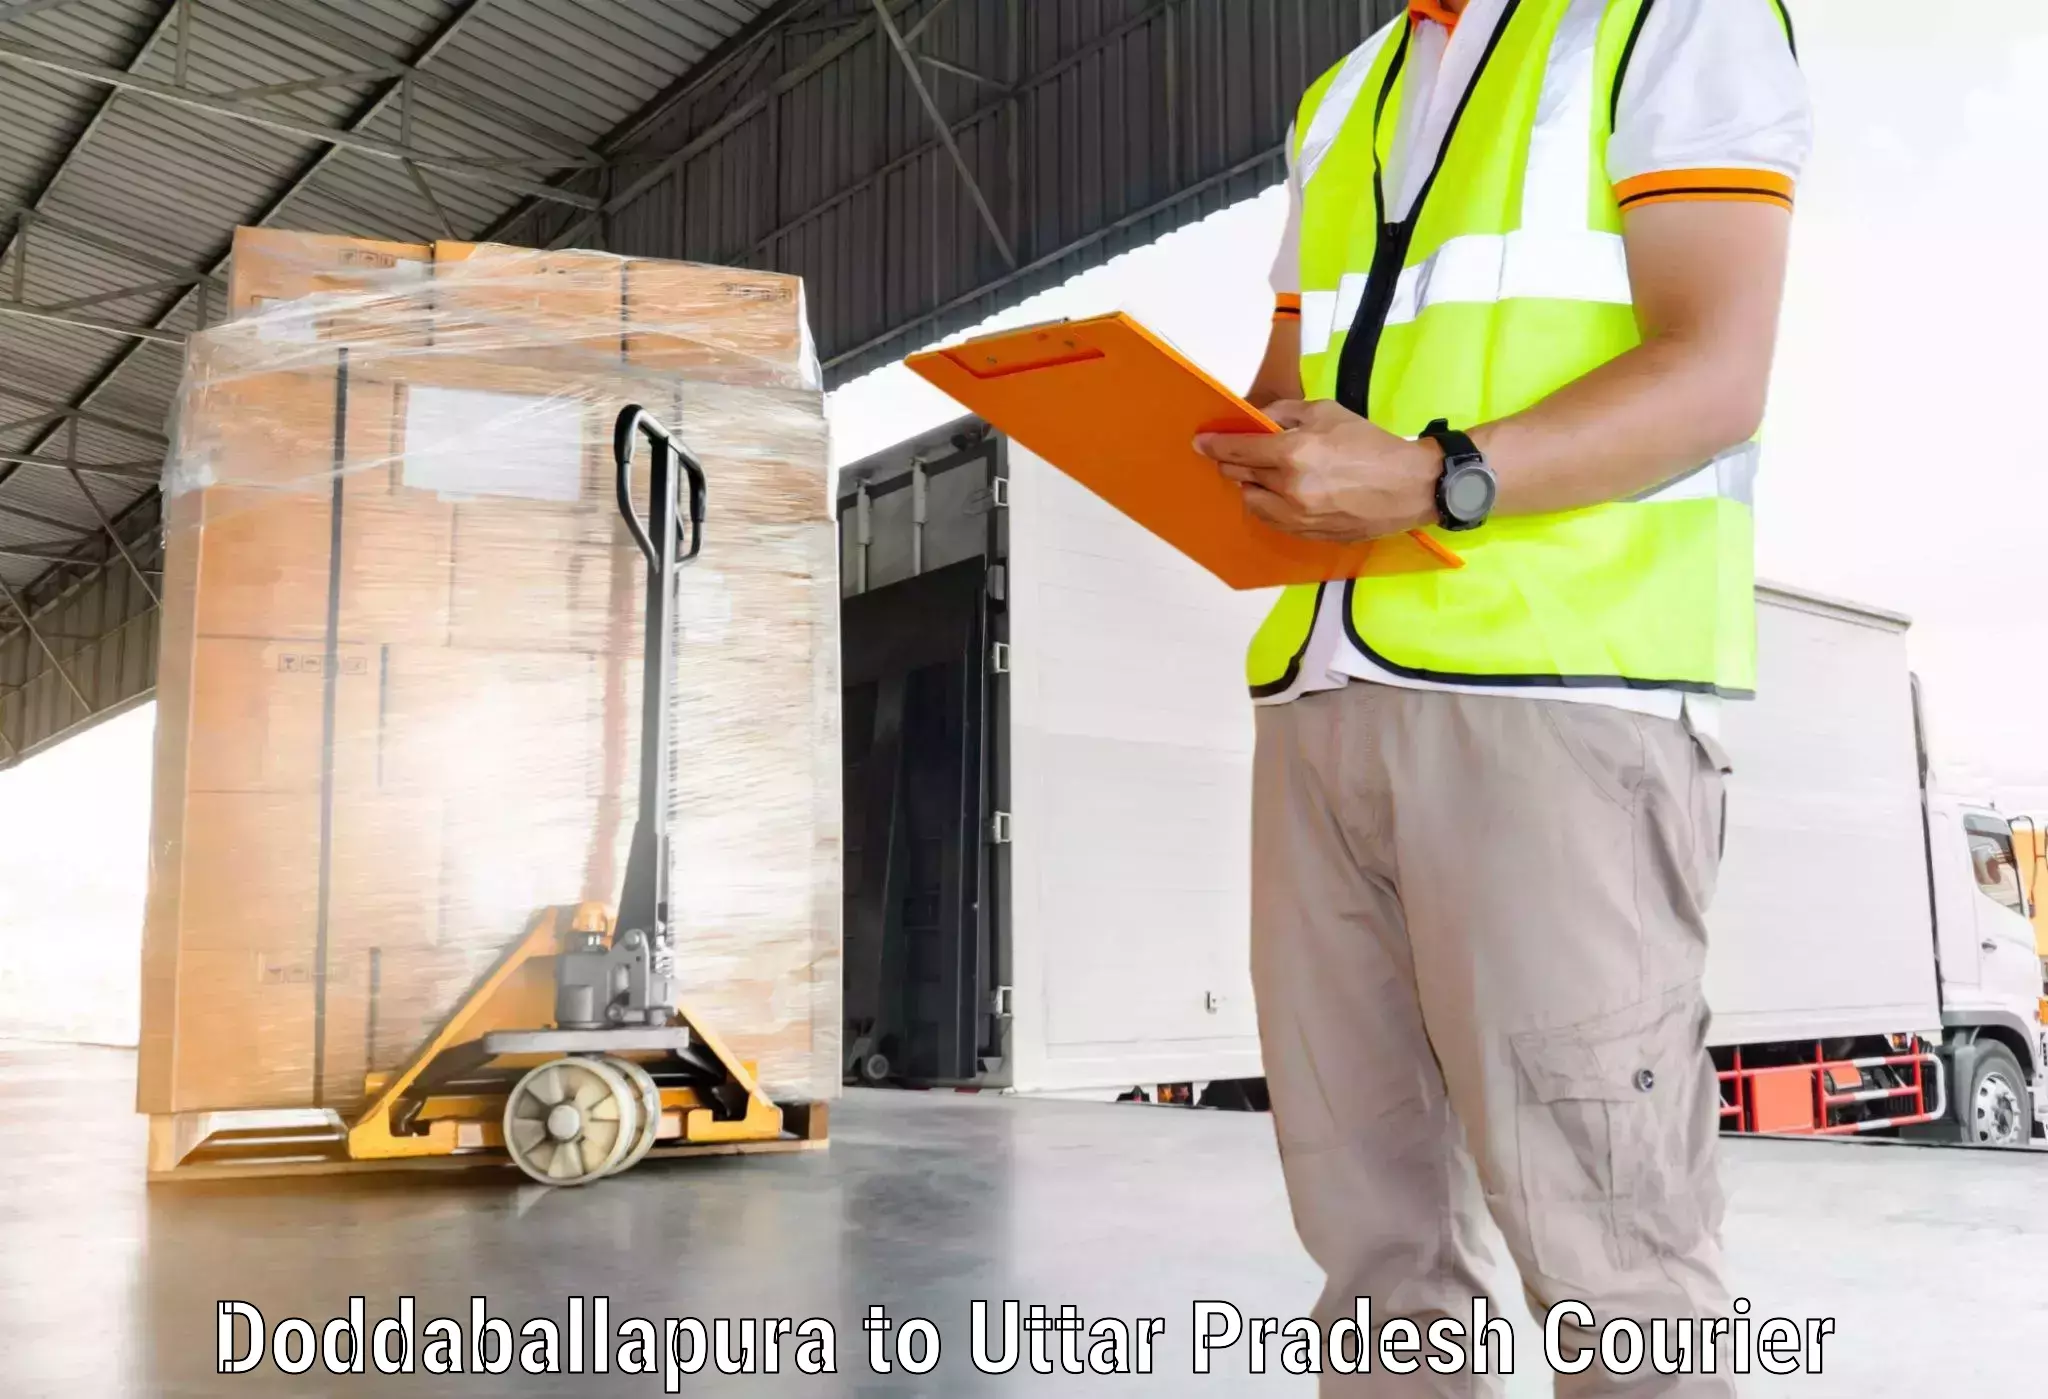 Heavy parcel delivery Doddaballapura to Amethi